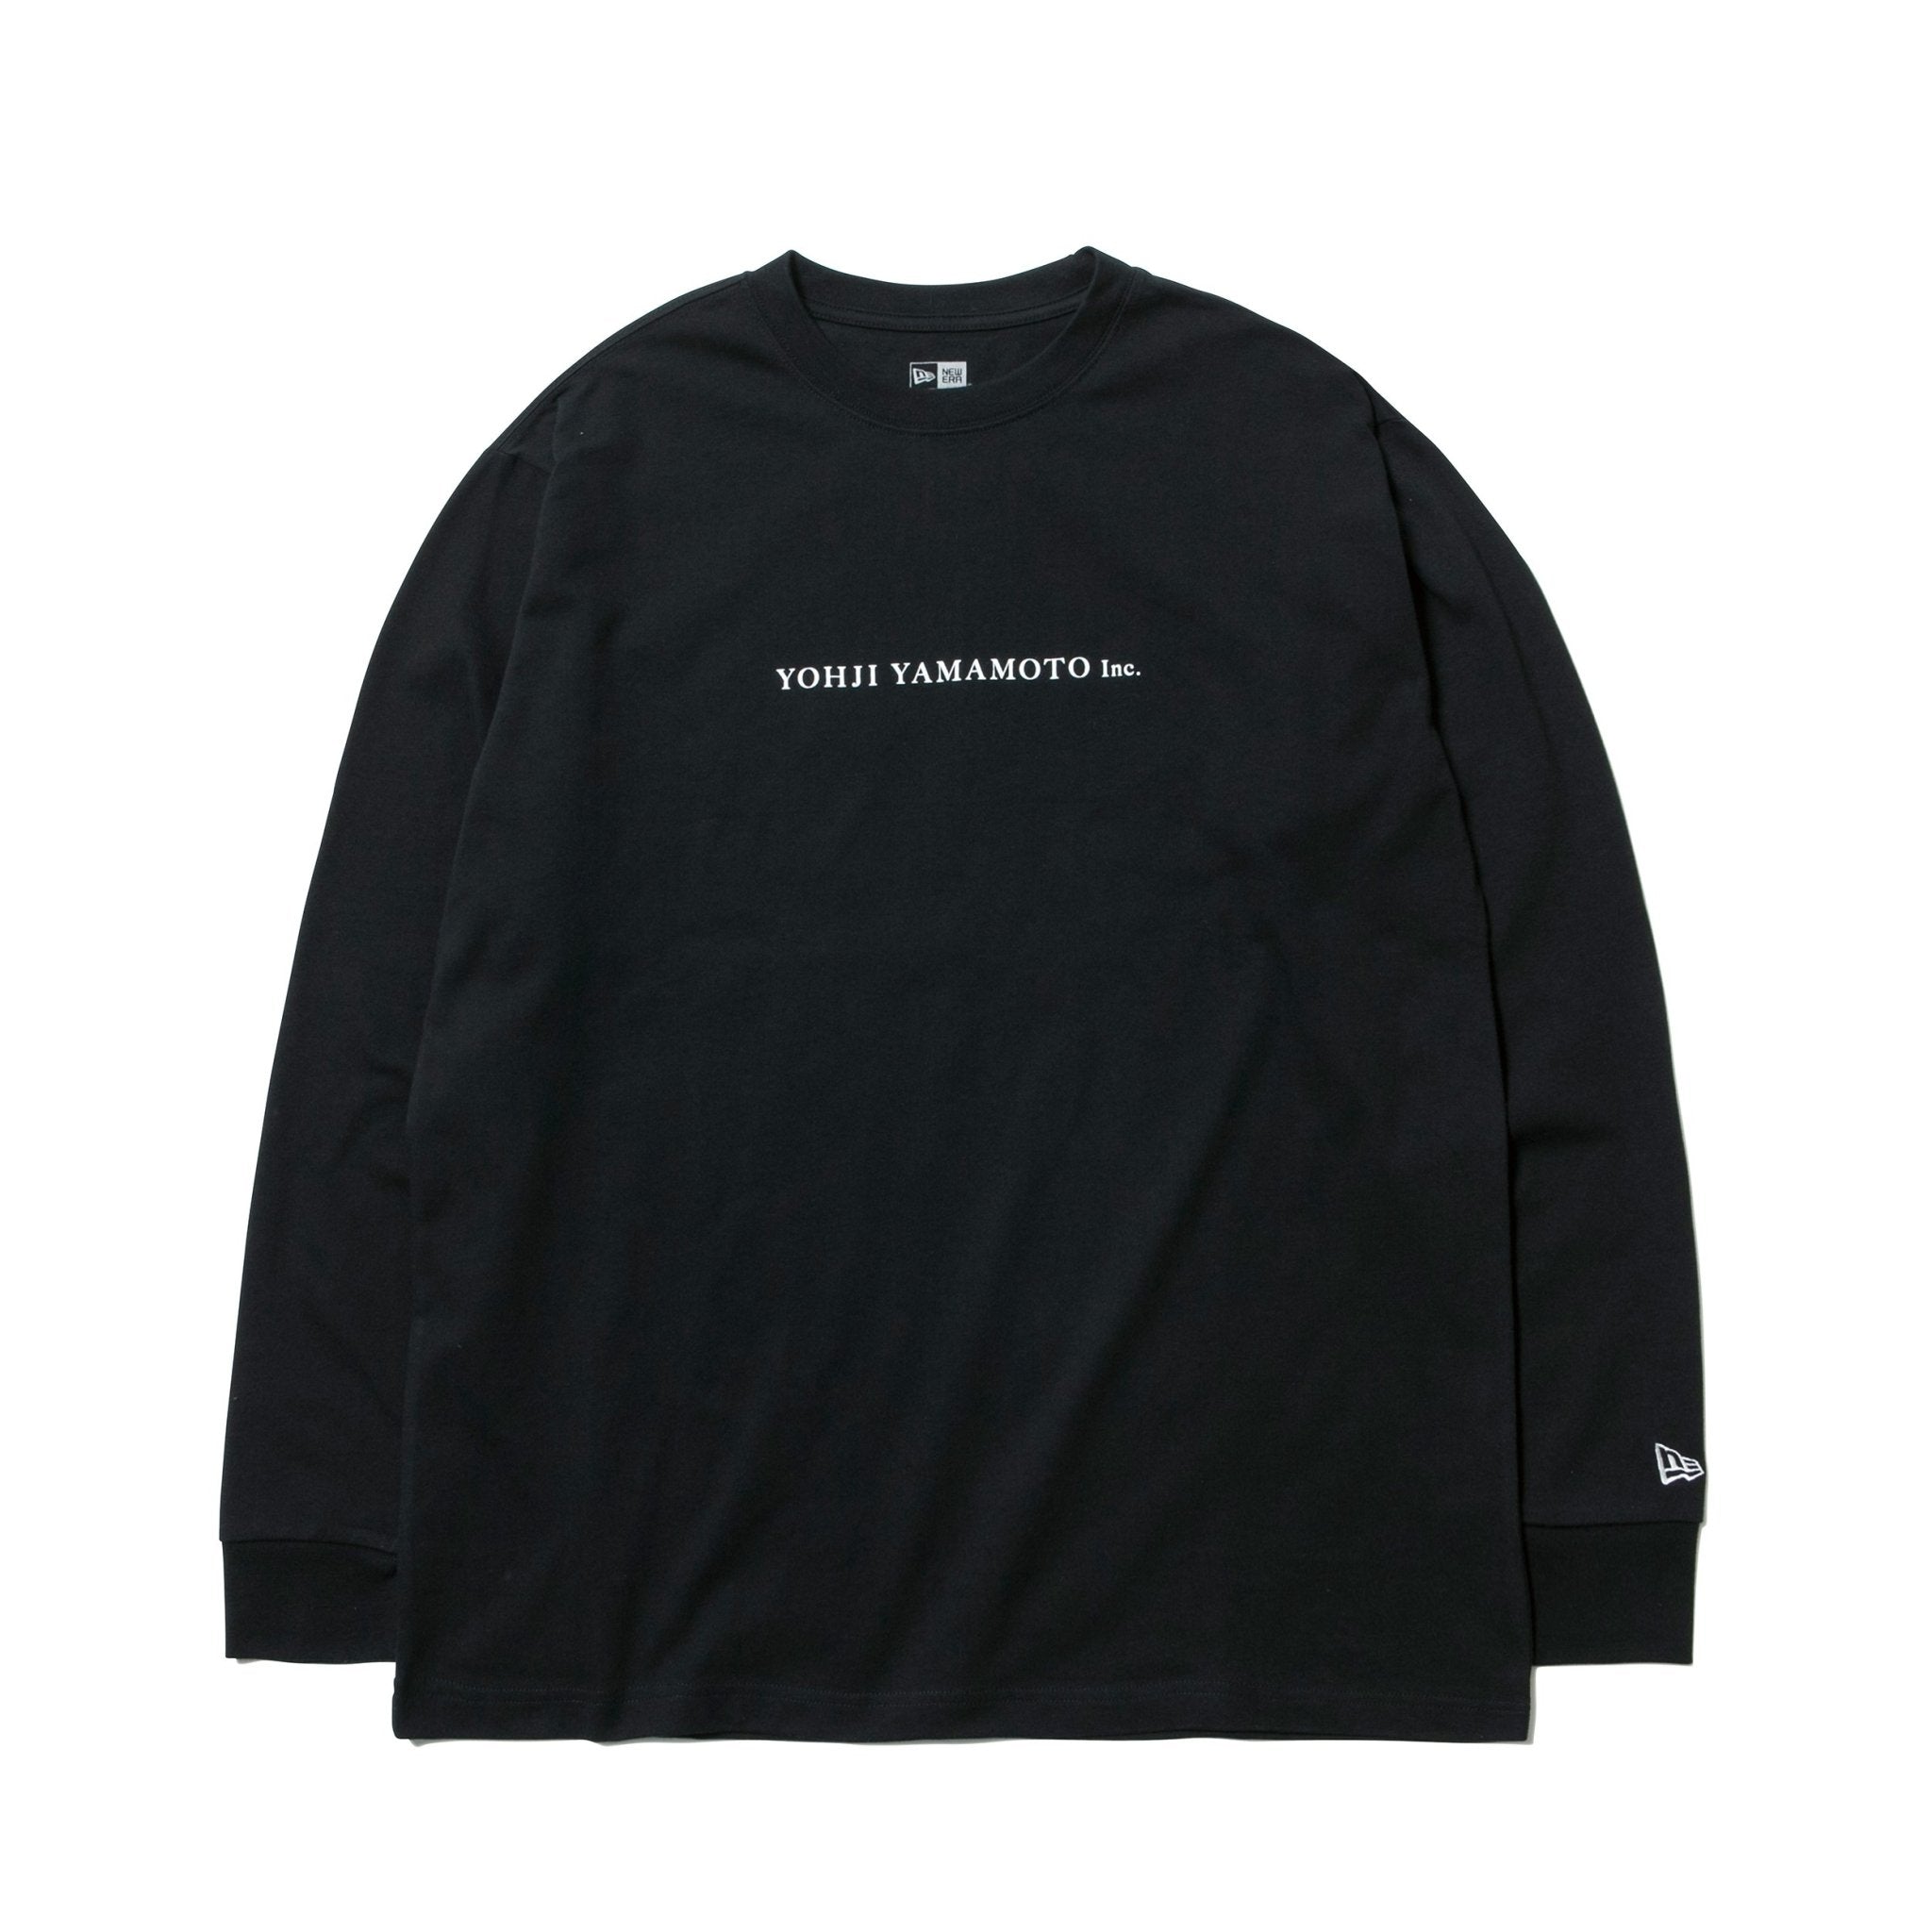 長袖 コットン Tシャツ SS20 Yohji Yamamoto Inc. ブラック